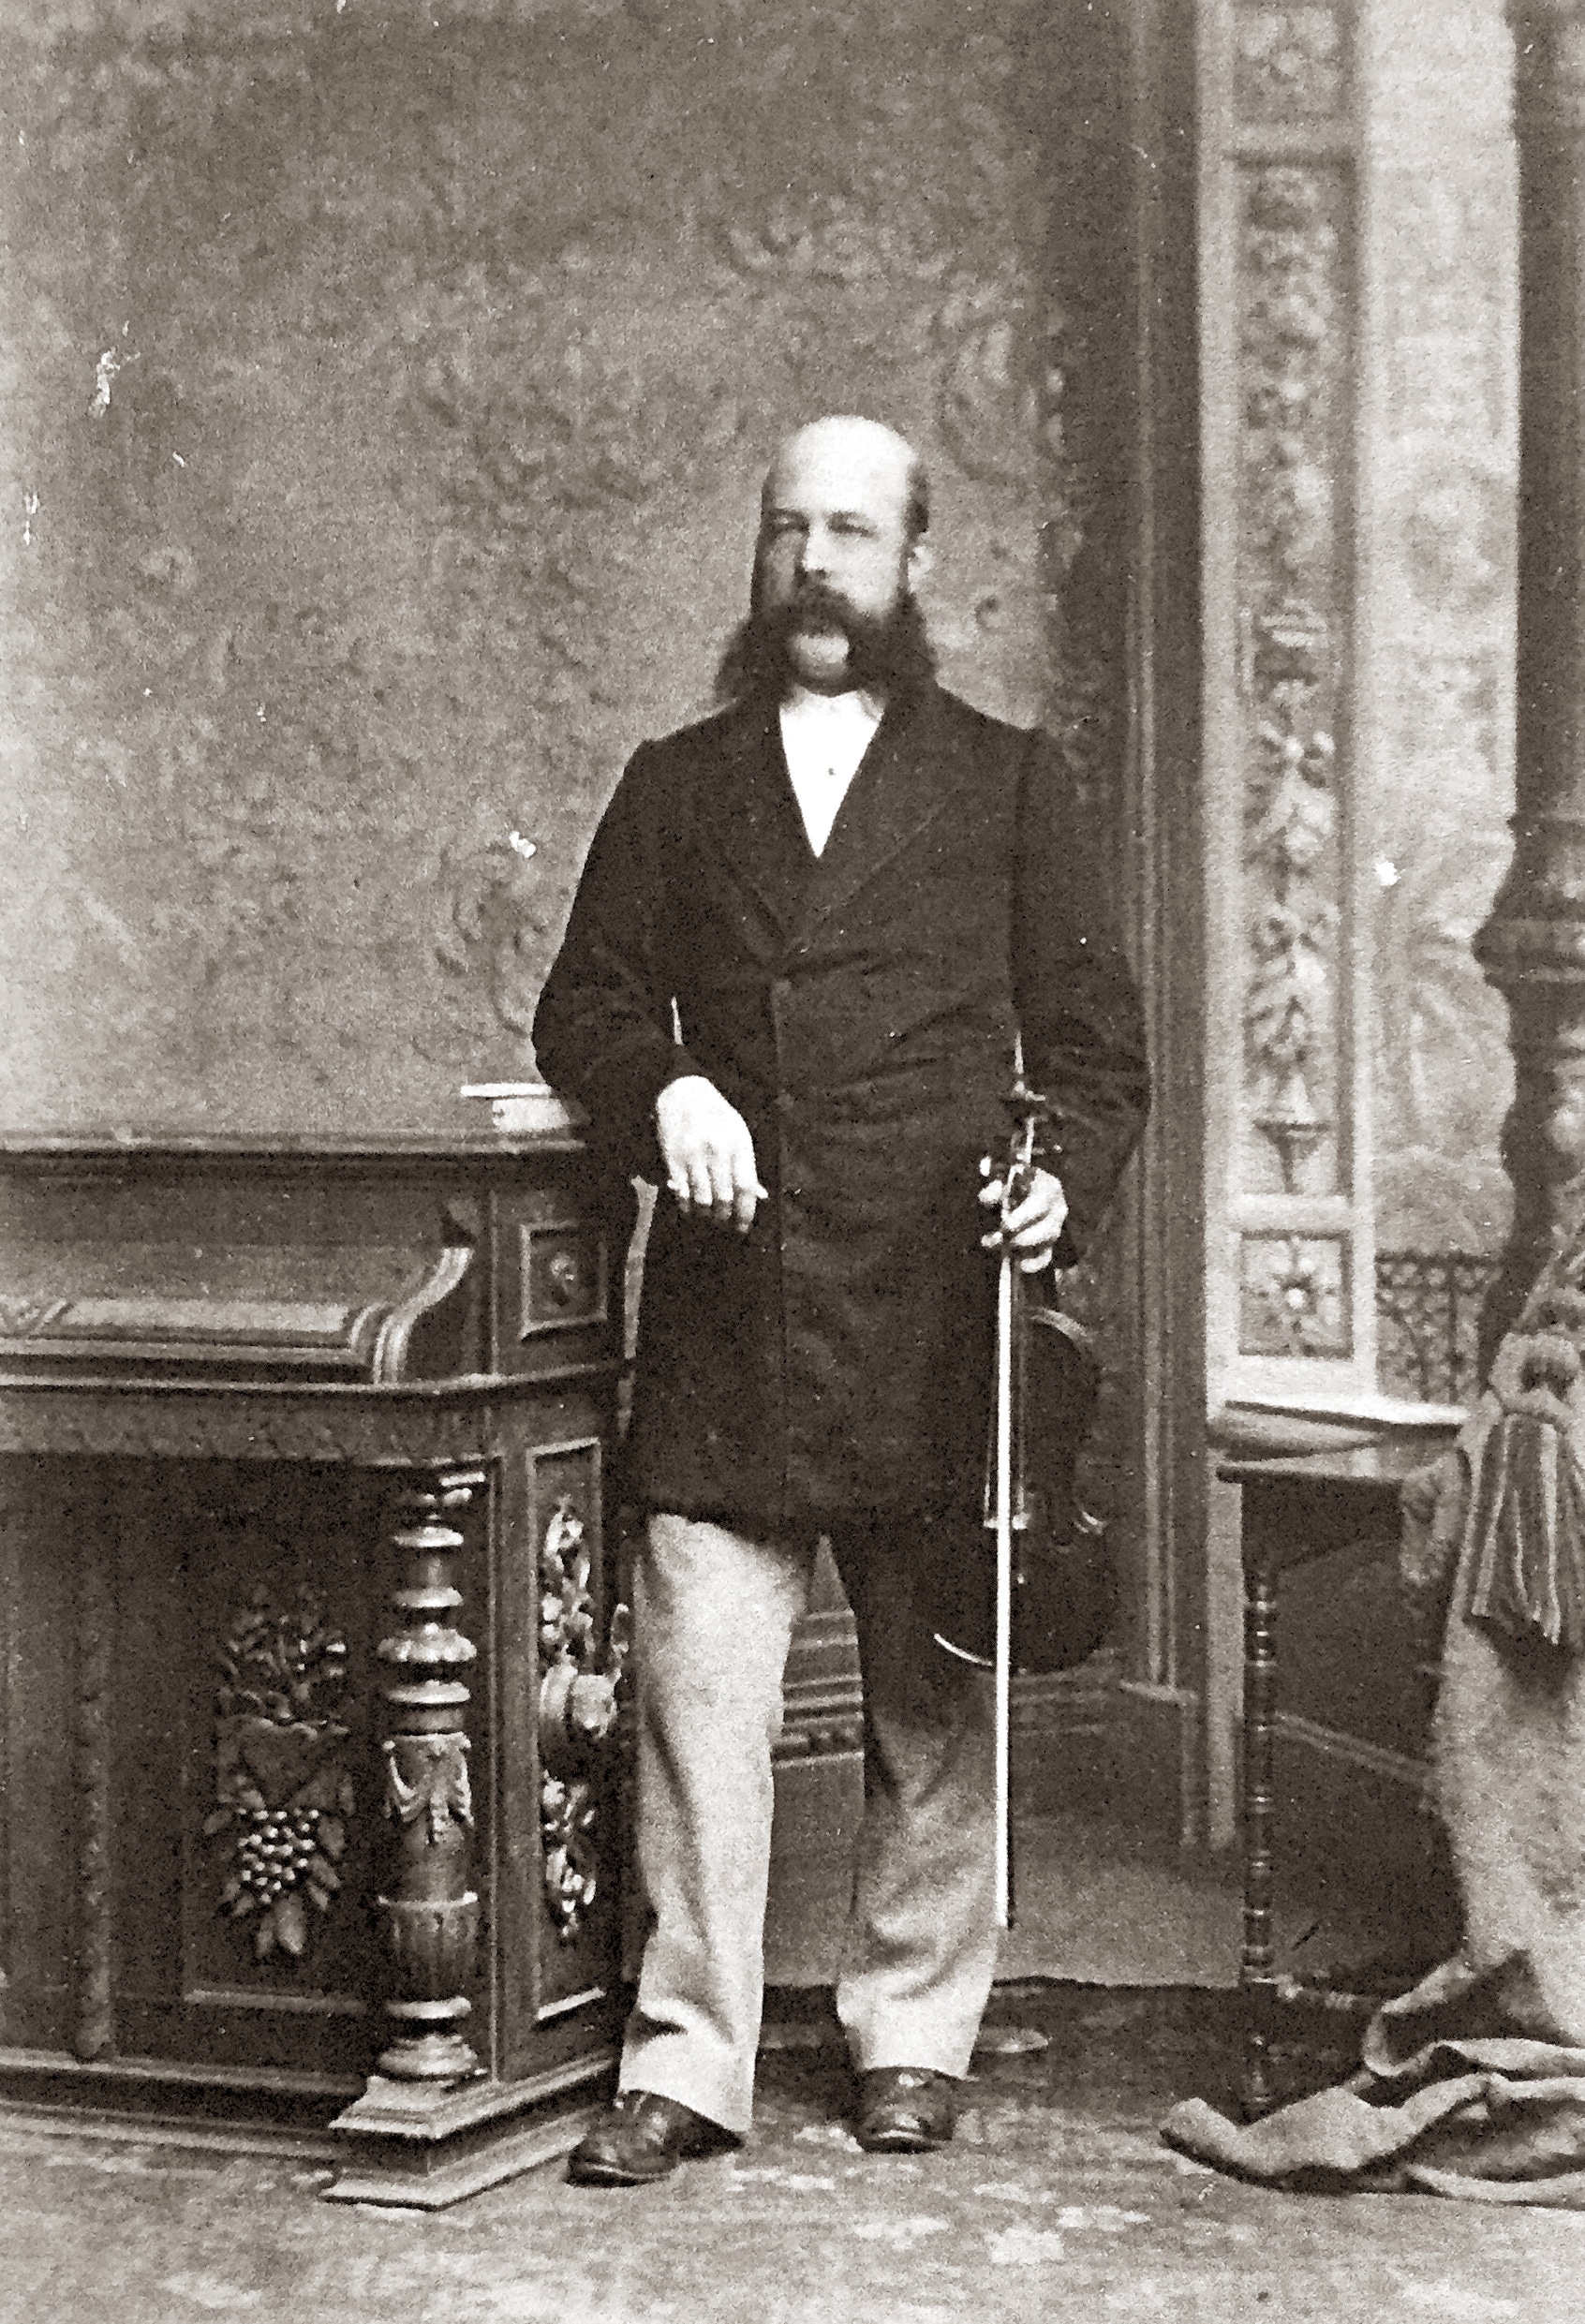 James Henri Anderson (photograph: J. W. Lindt)